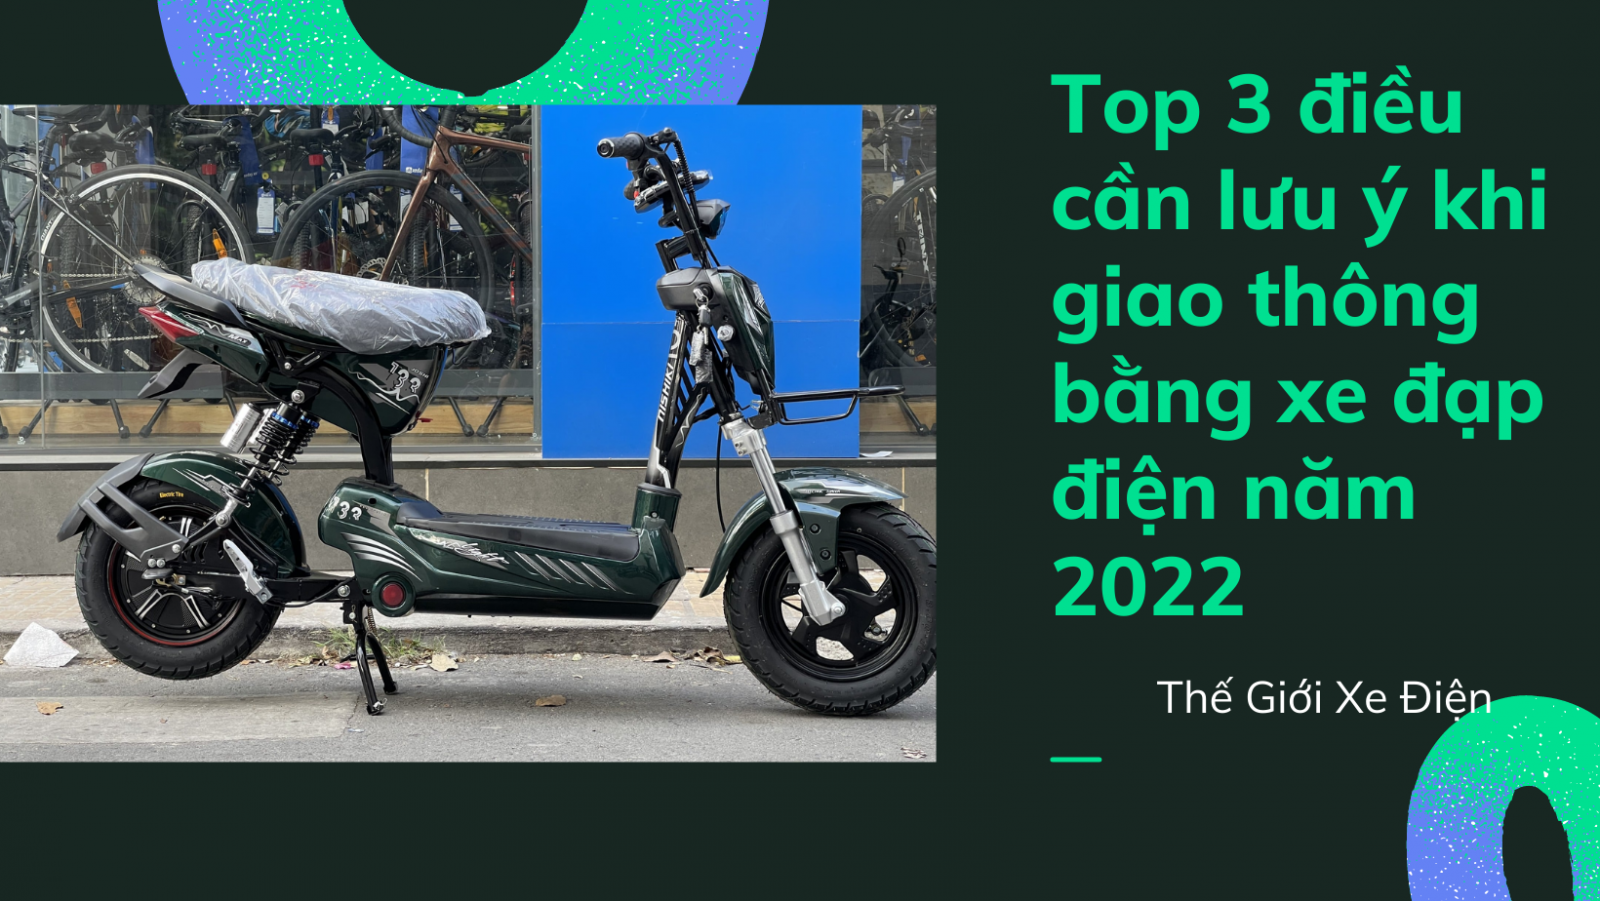 Top 3 điều cần lưu ý khi giao thông bằng xe đạp điện năm 2022